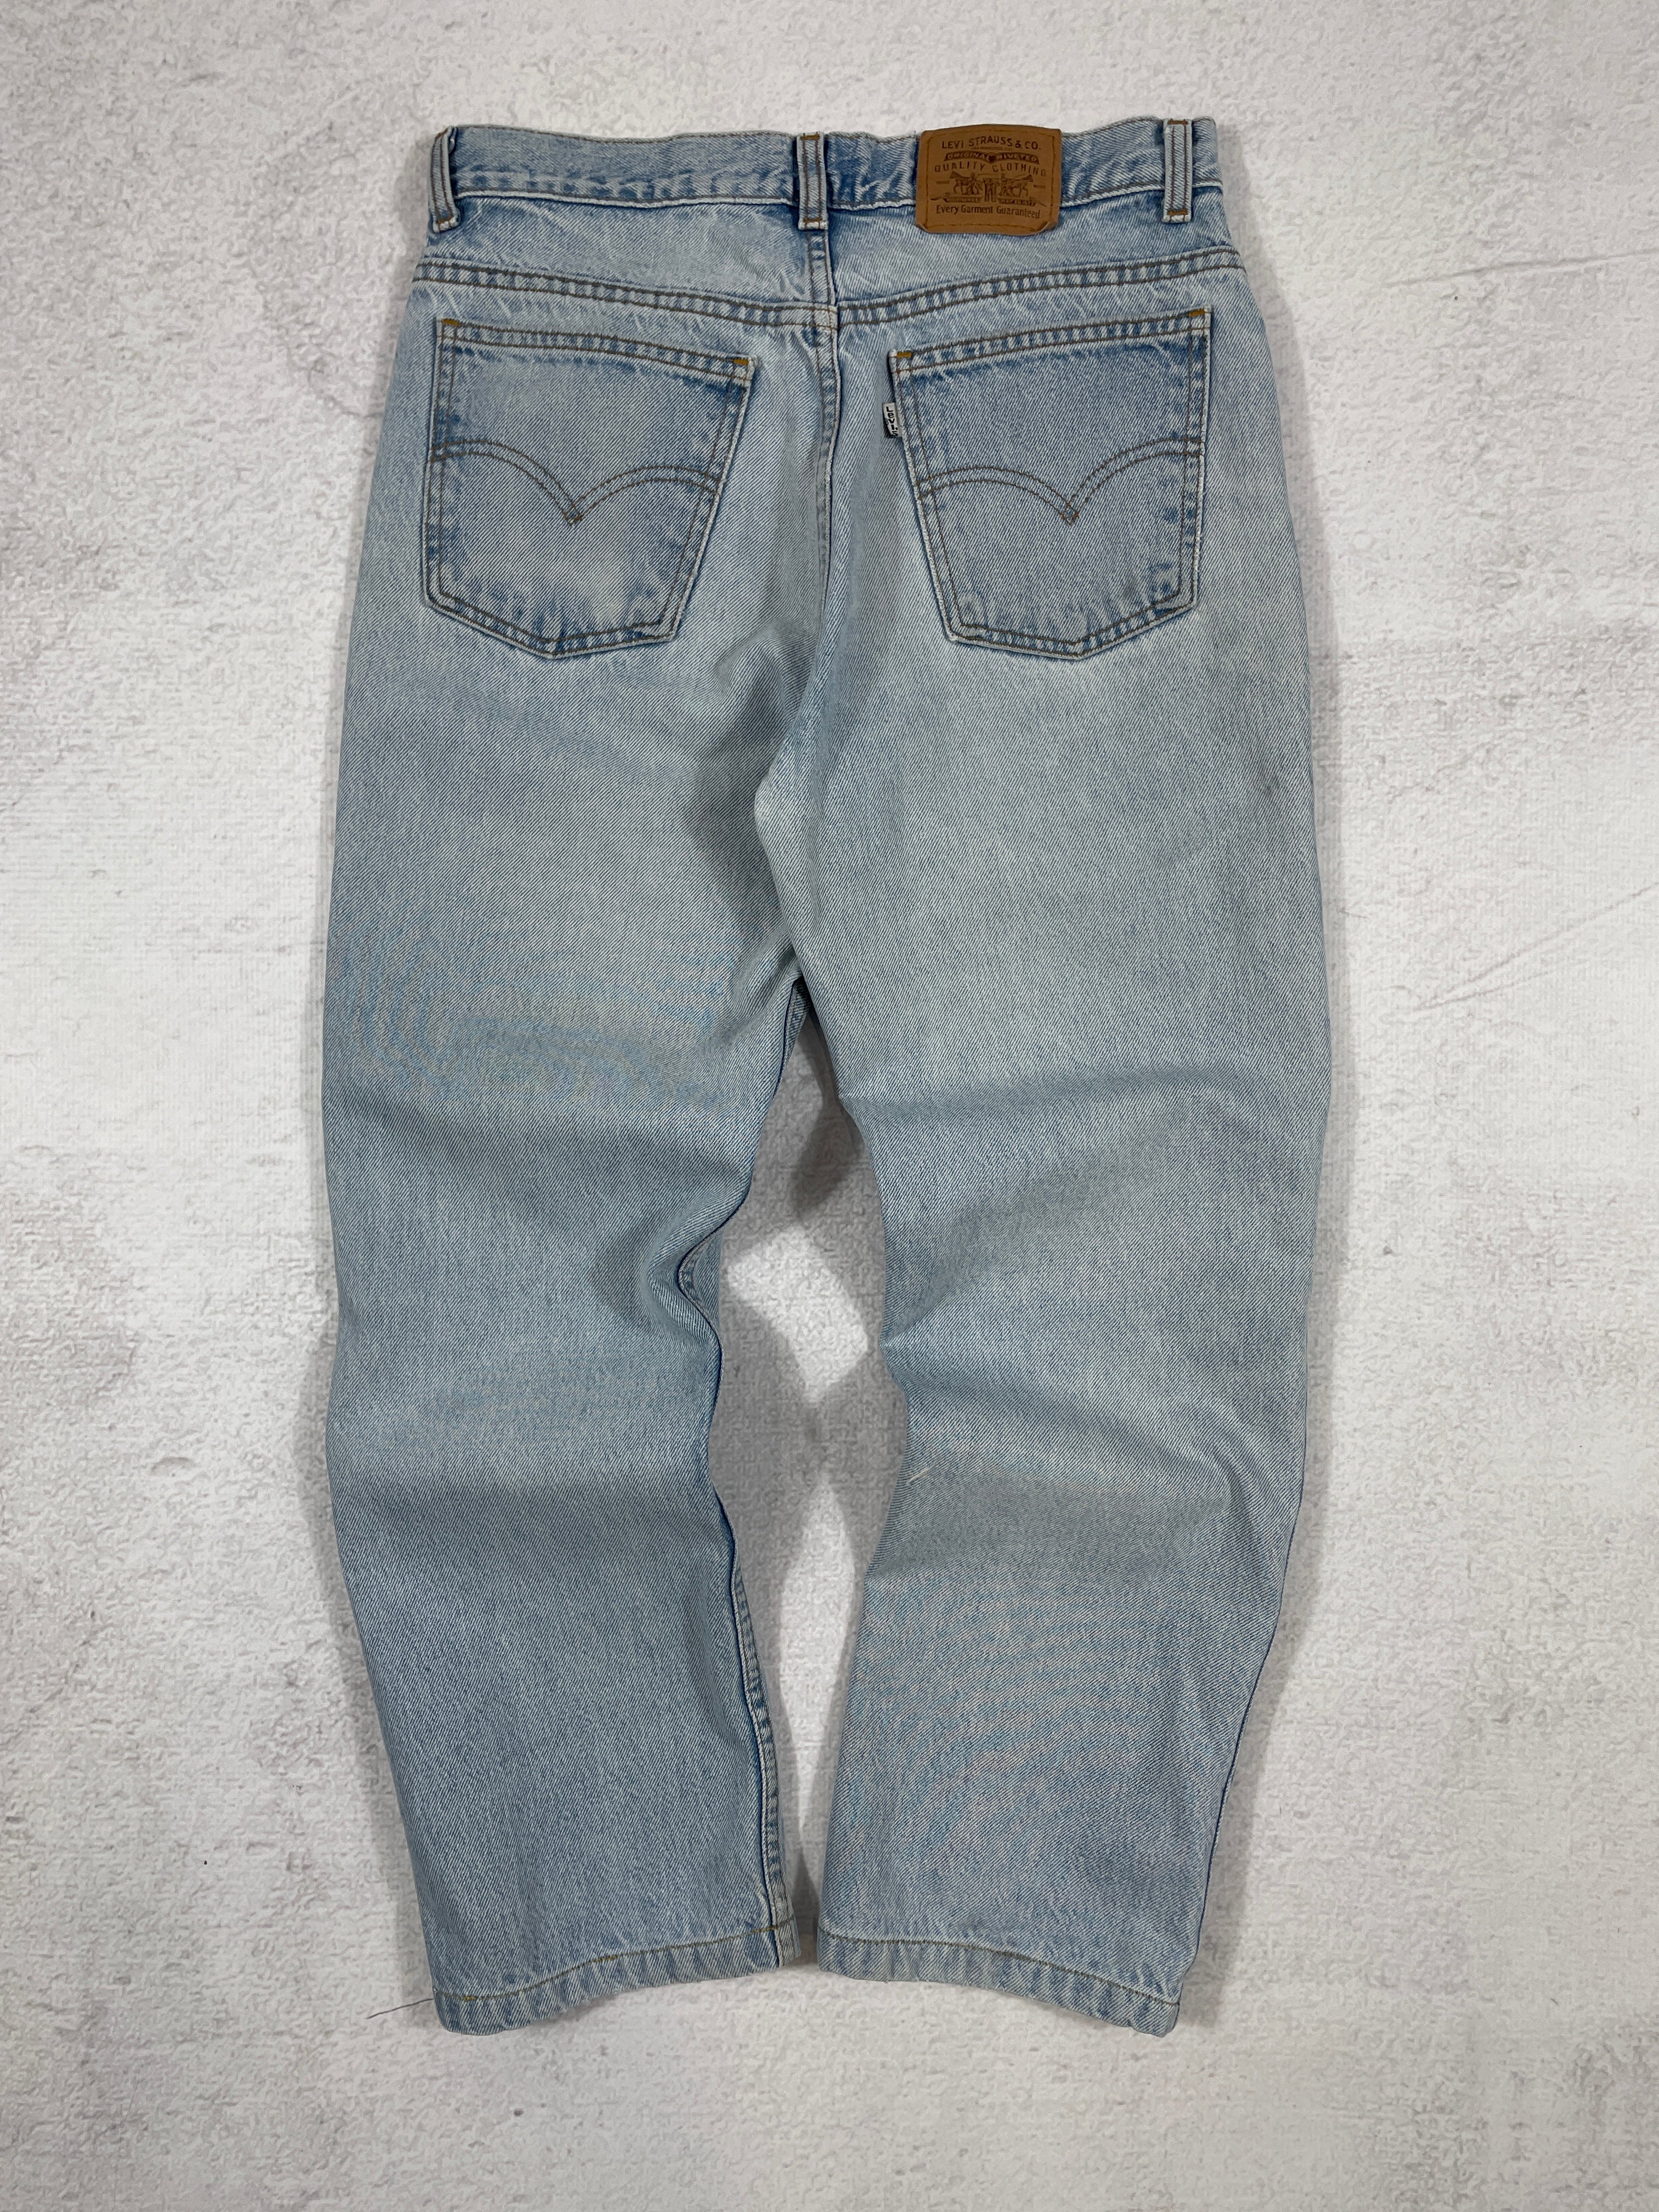 Vintage Levis Silver Tab Jeans - Men's 30Wx29L